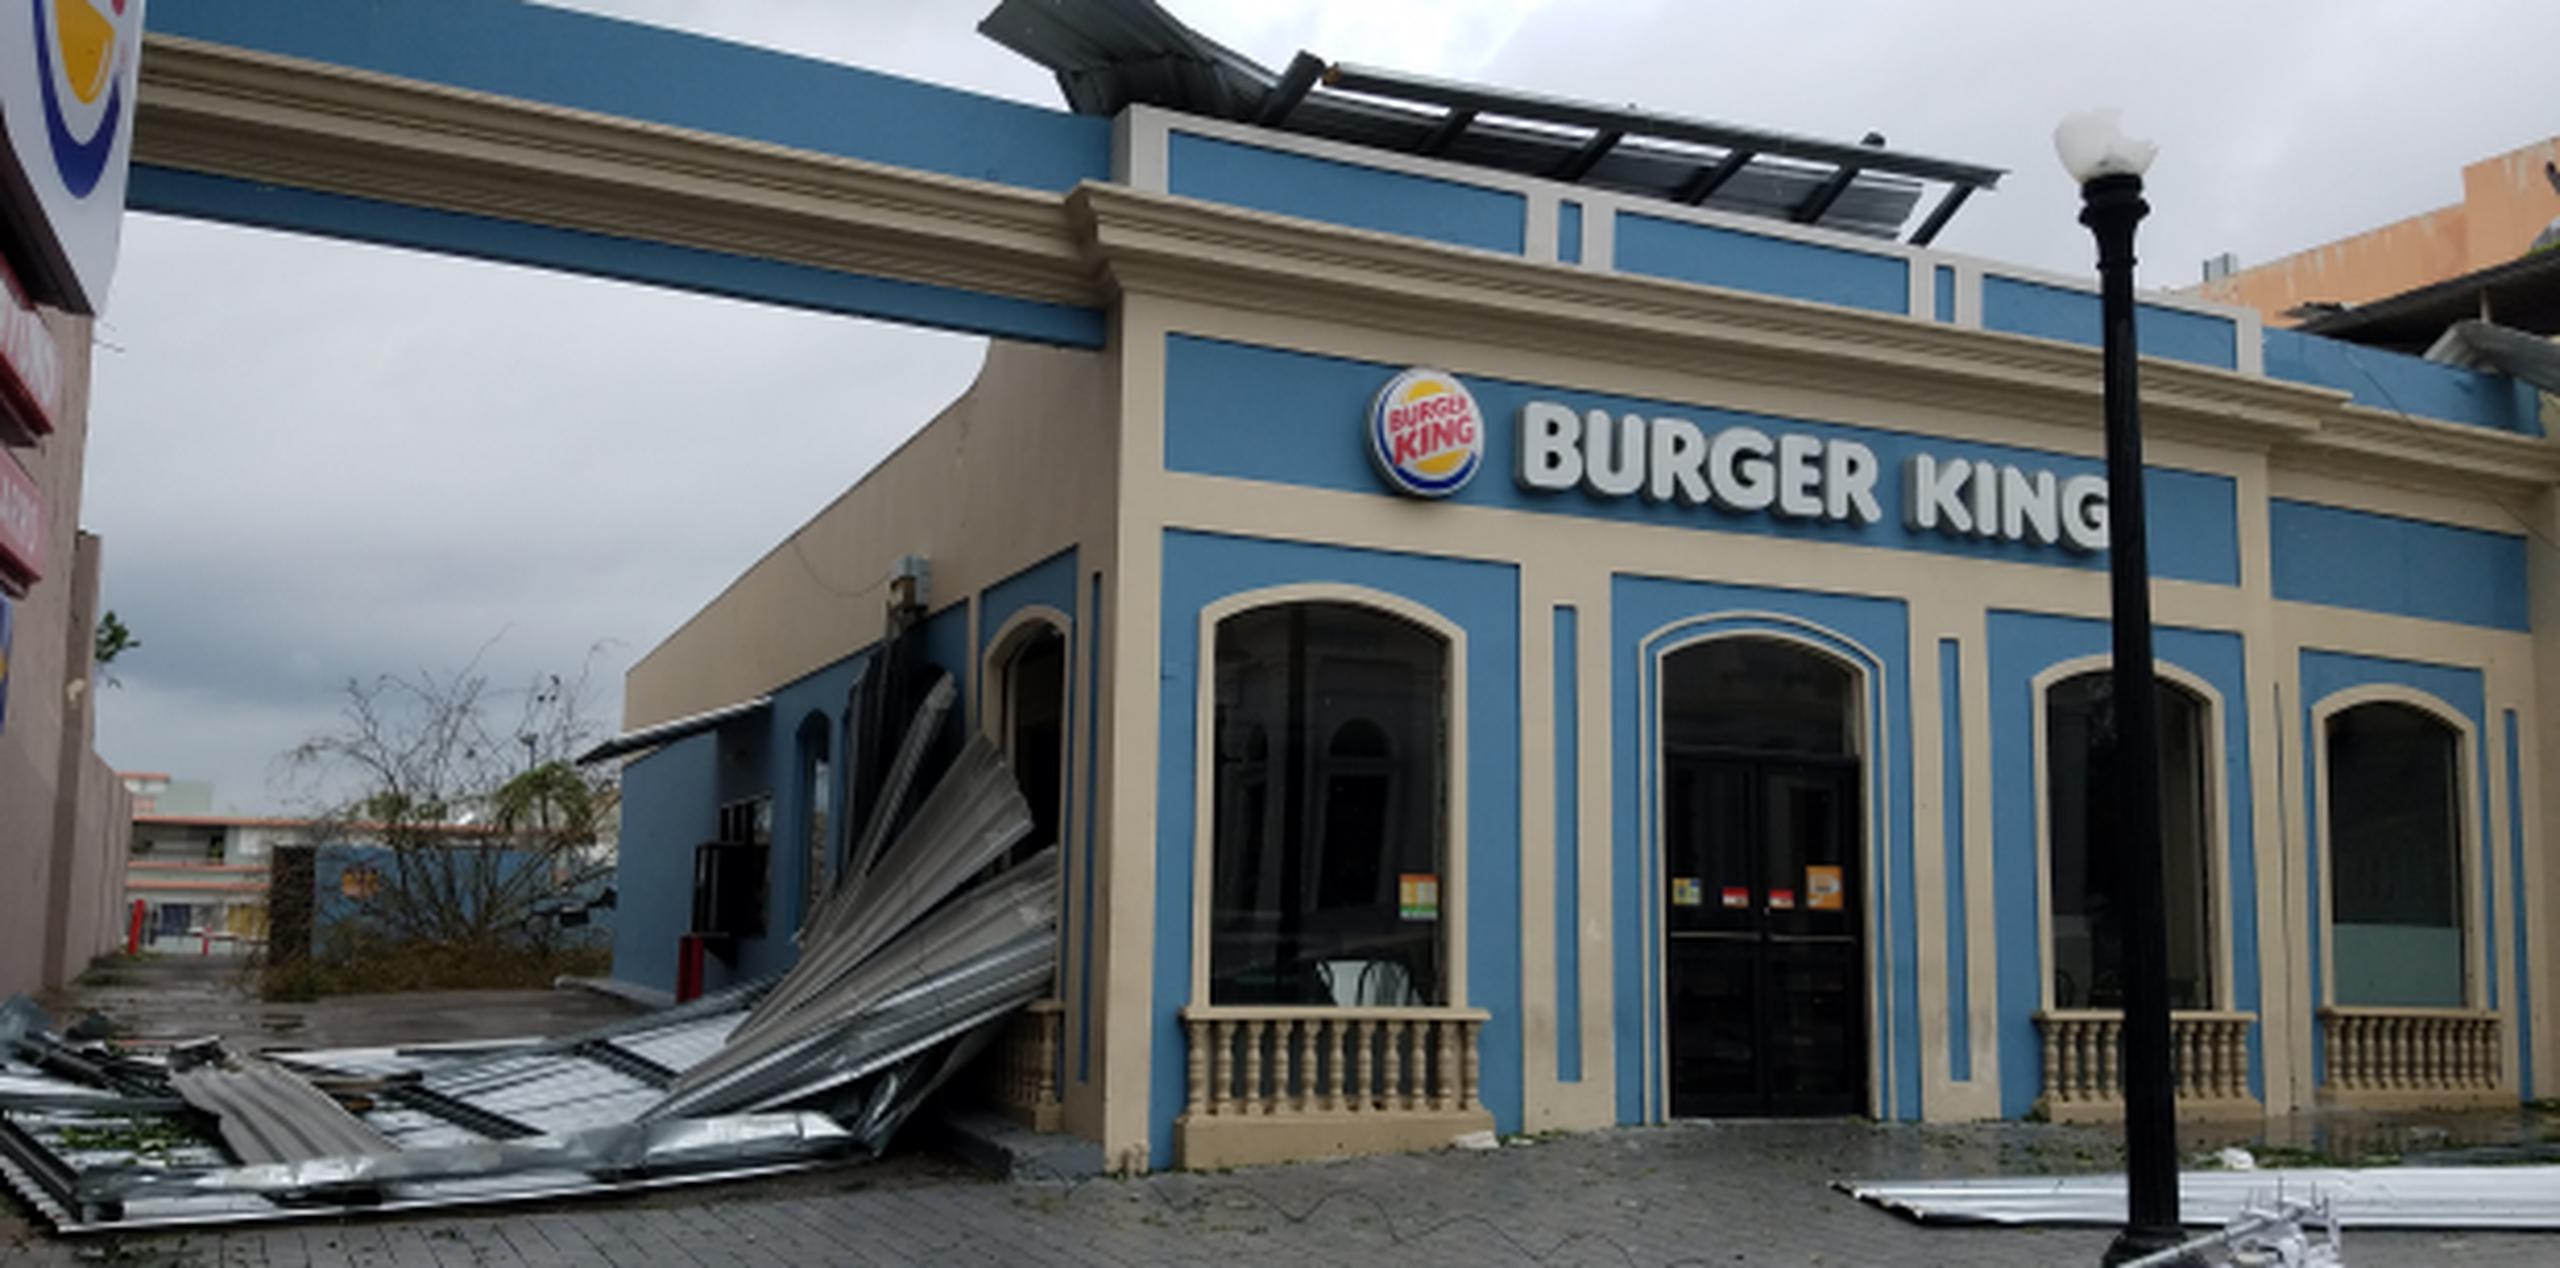 El techo de zinc del restaurante Burger King se desprendió y quedó tirado en la calle, y un cristal lateral se rompió. (michelle.estrada@gfrmedia.com)